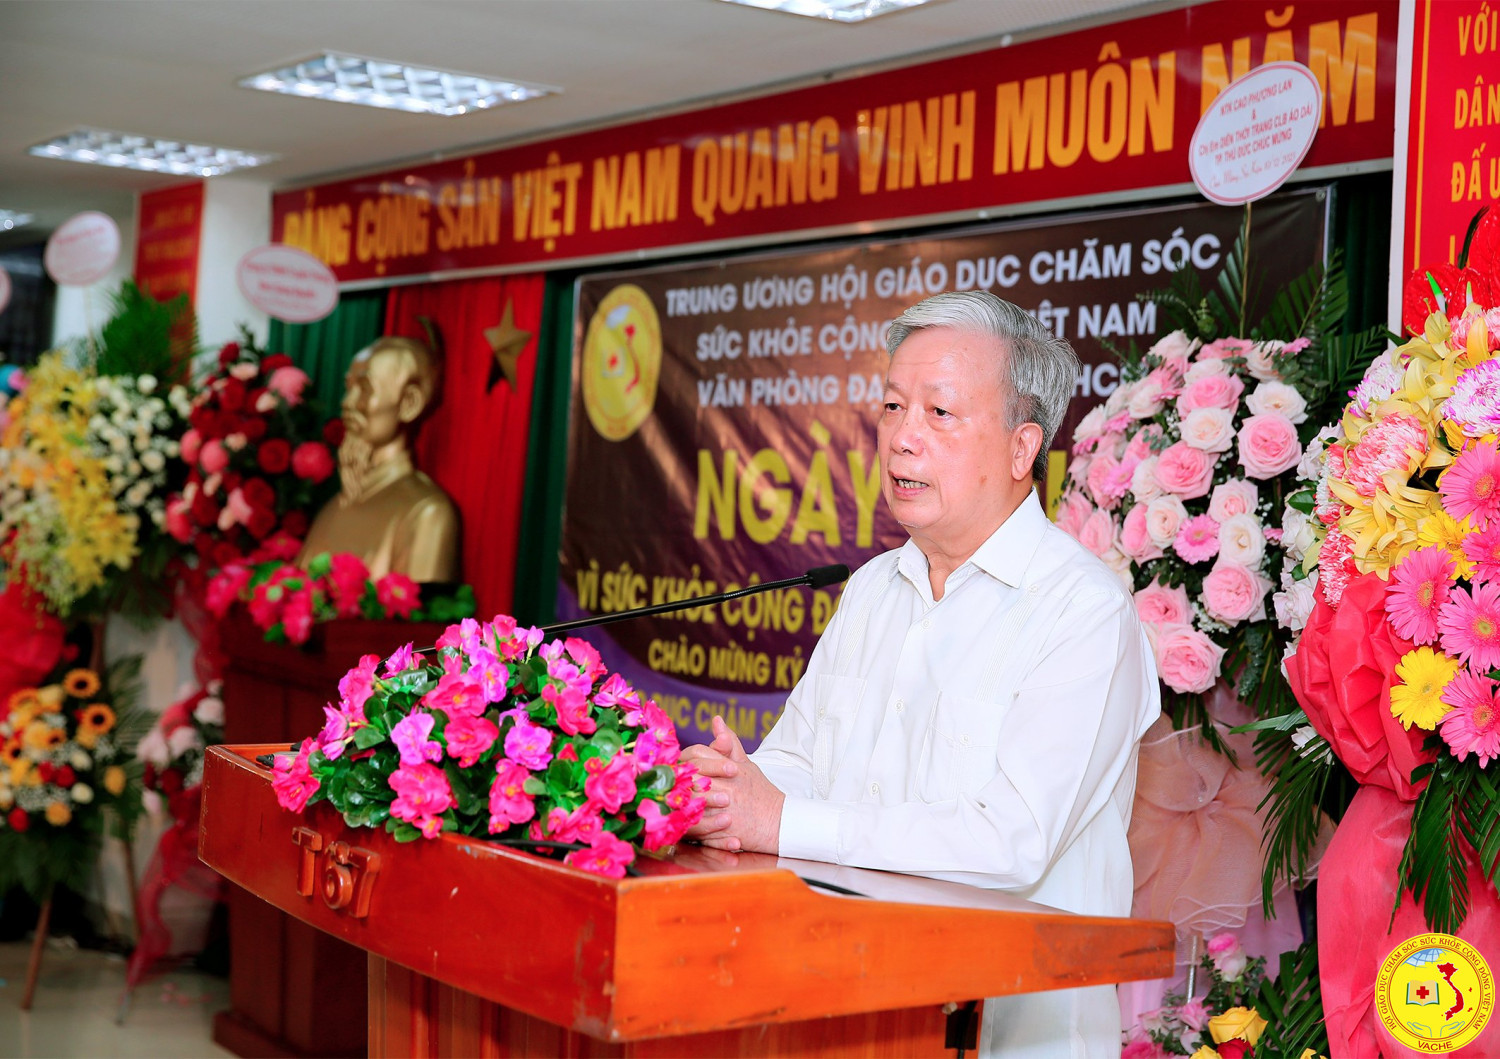 Chủ tịch TW Hội, ông Nguyễn Hồng Quân, nguyên uỷ viên trung ương Đãng, nguyên bộ trưởng Bộ Xây Dựng